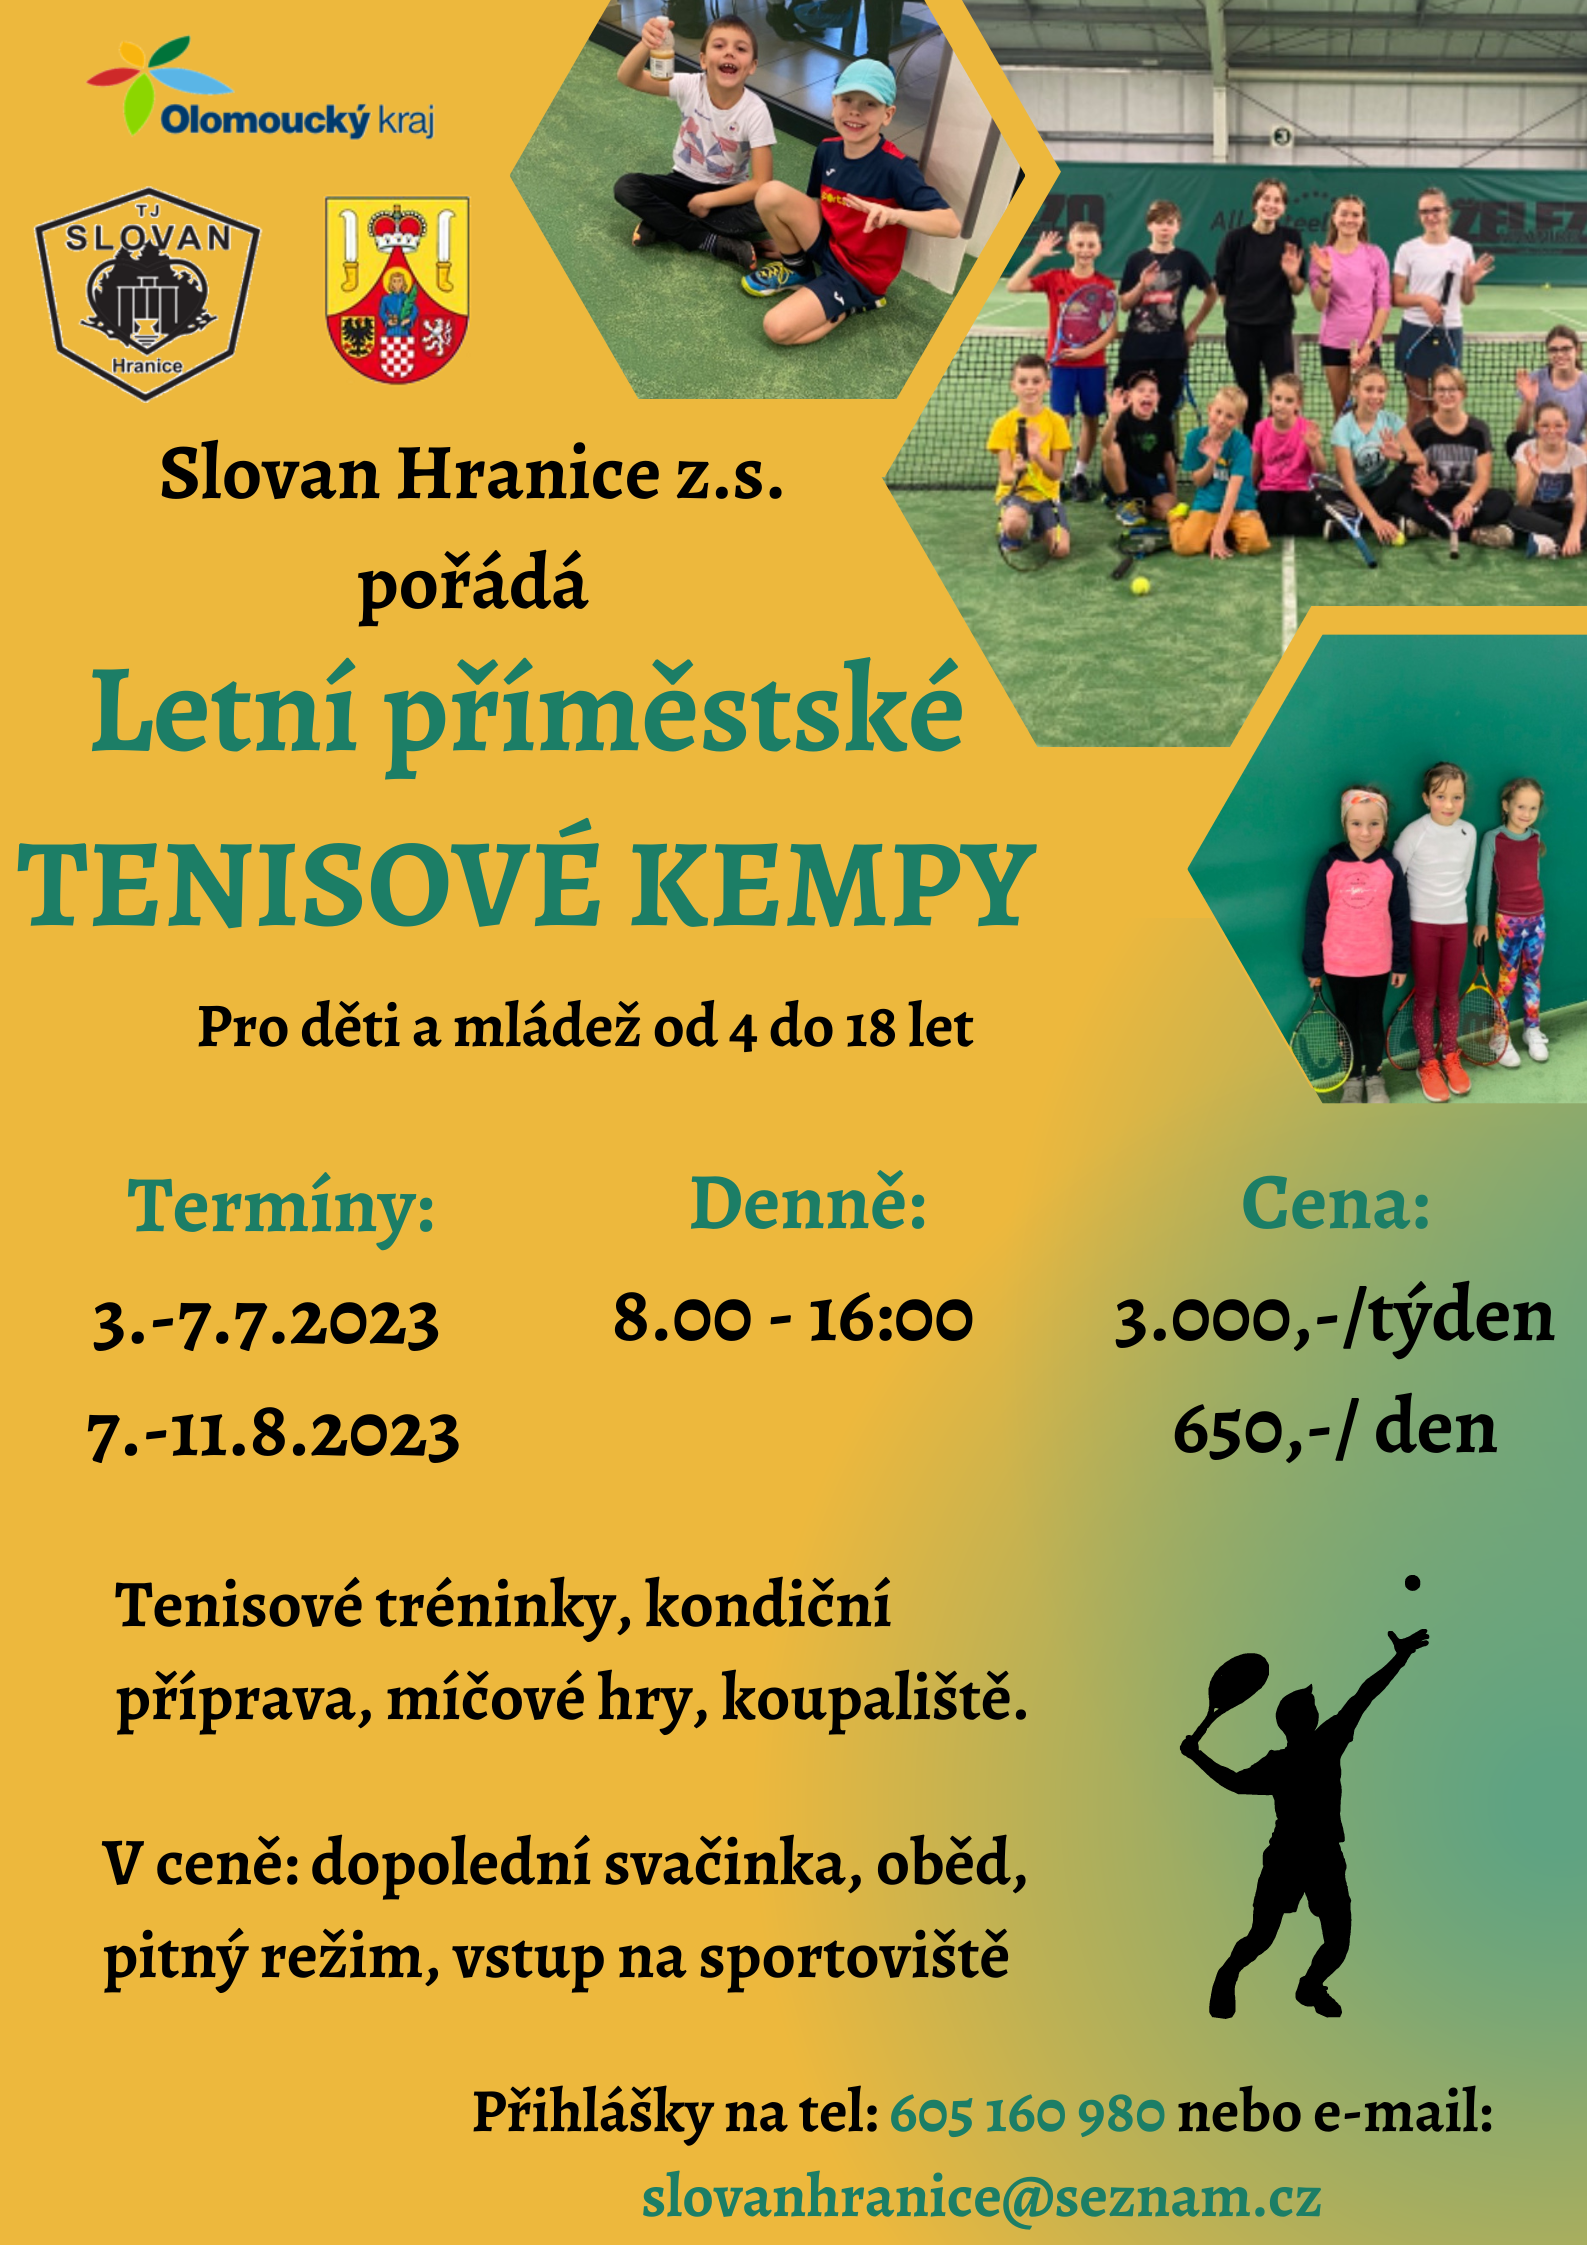 Letní příměstské tenisové kempy - Slovan Hranice, z.s.